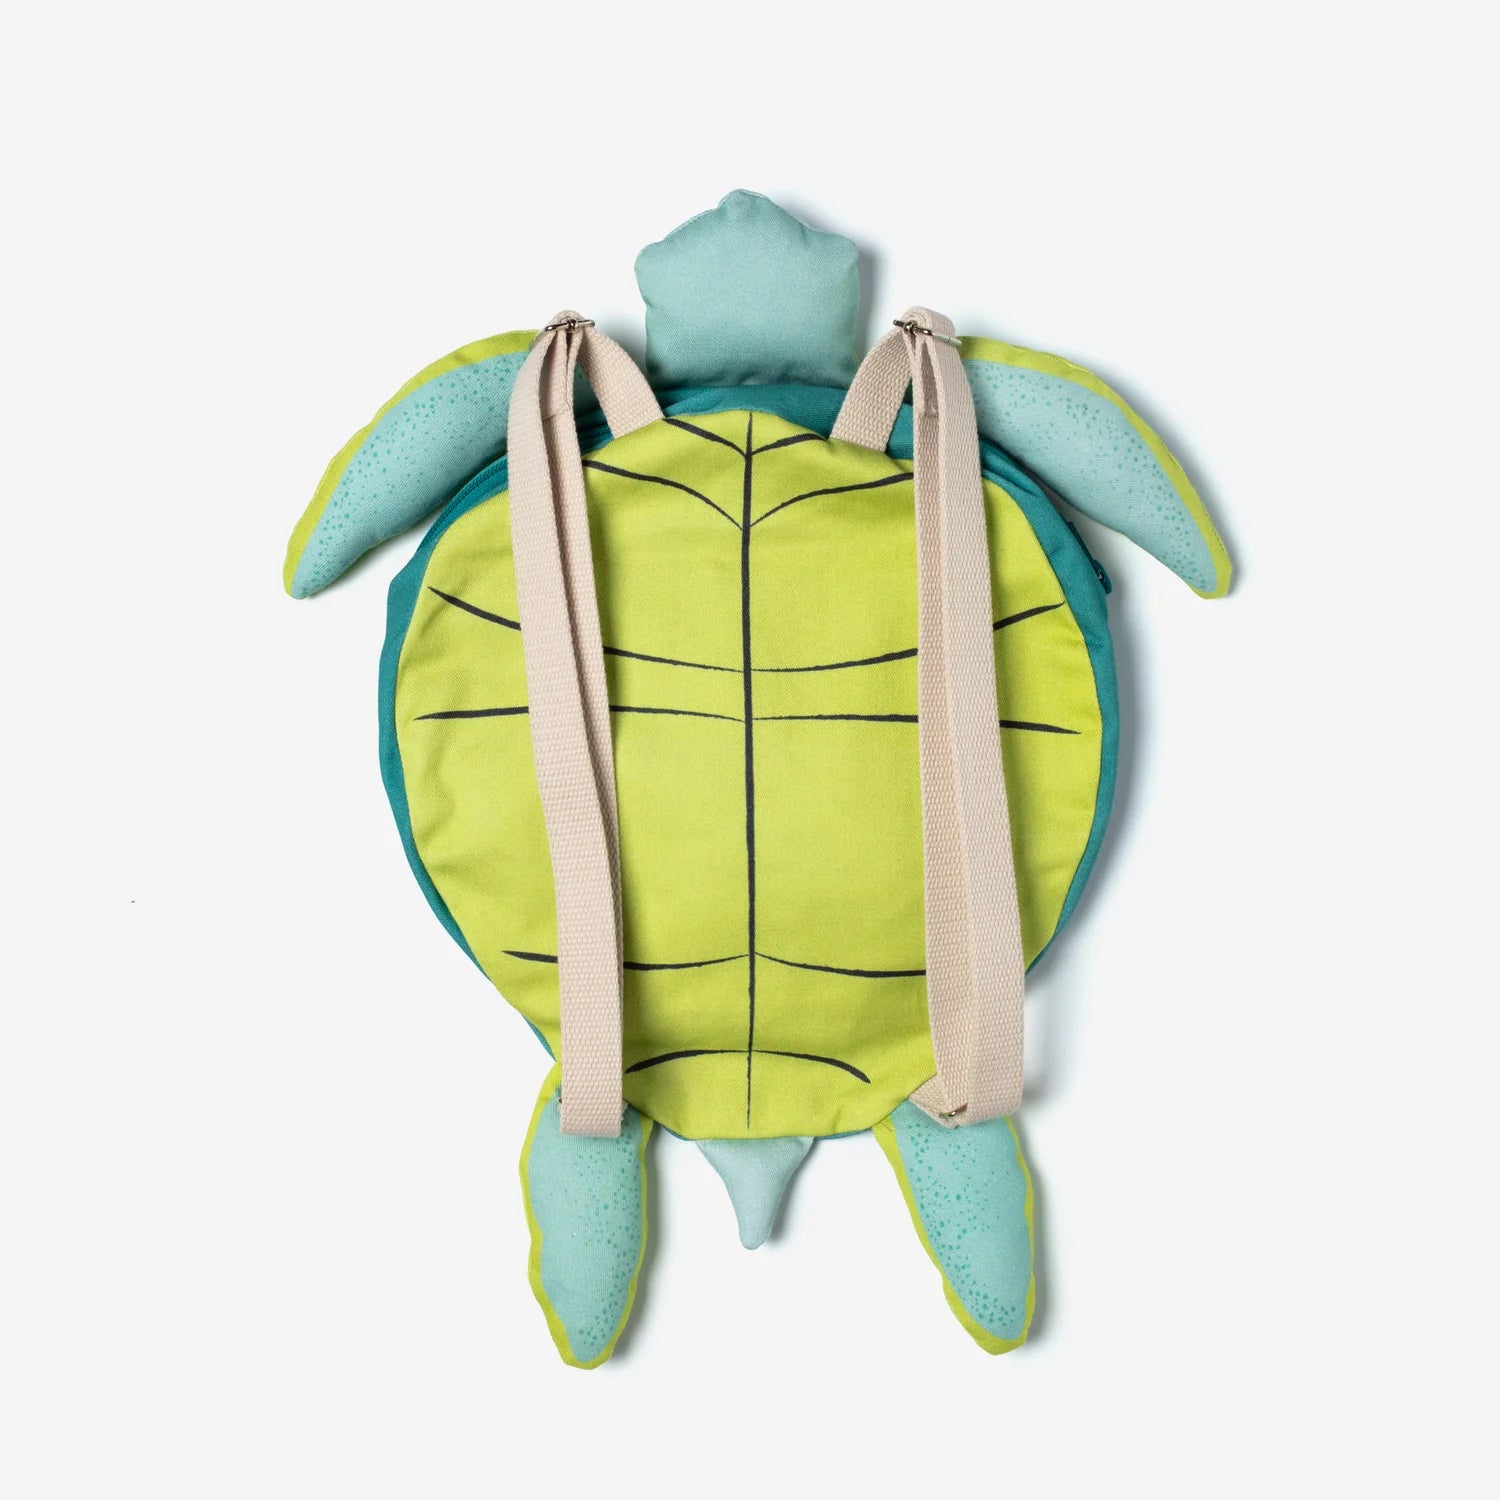 Turtle Backpack - Waterproof